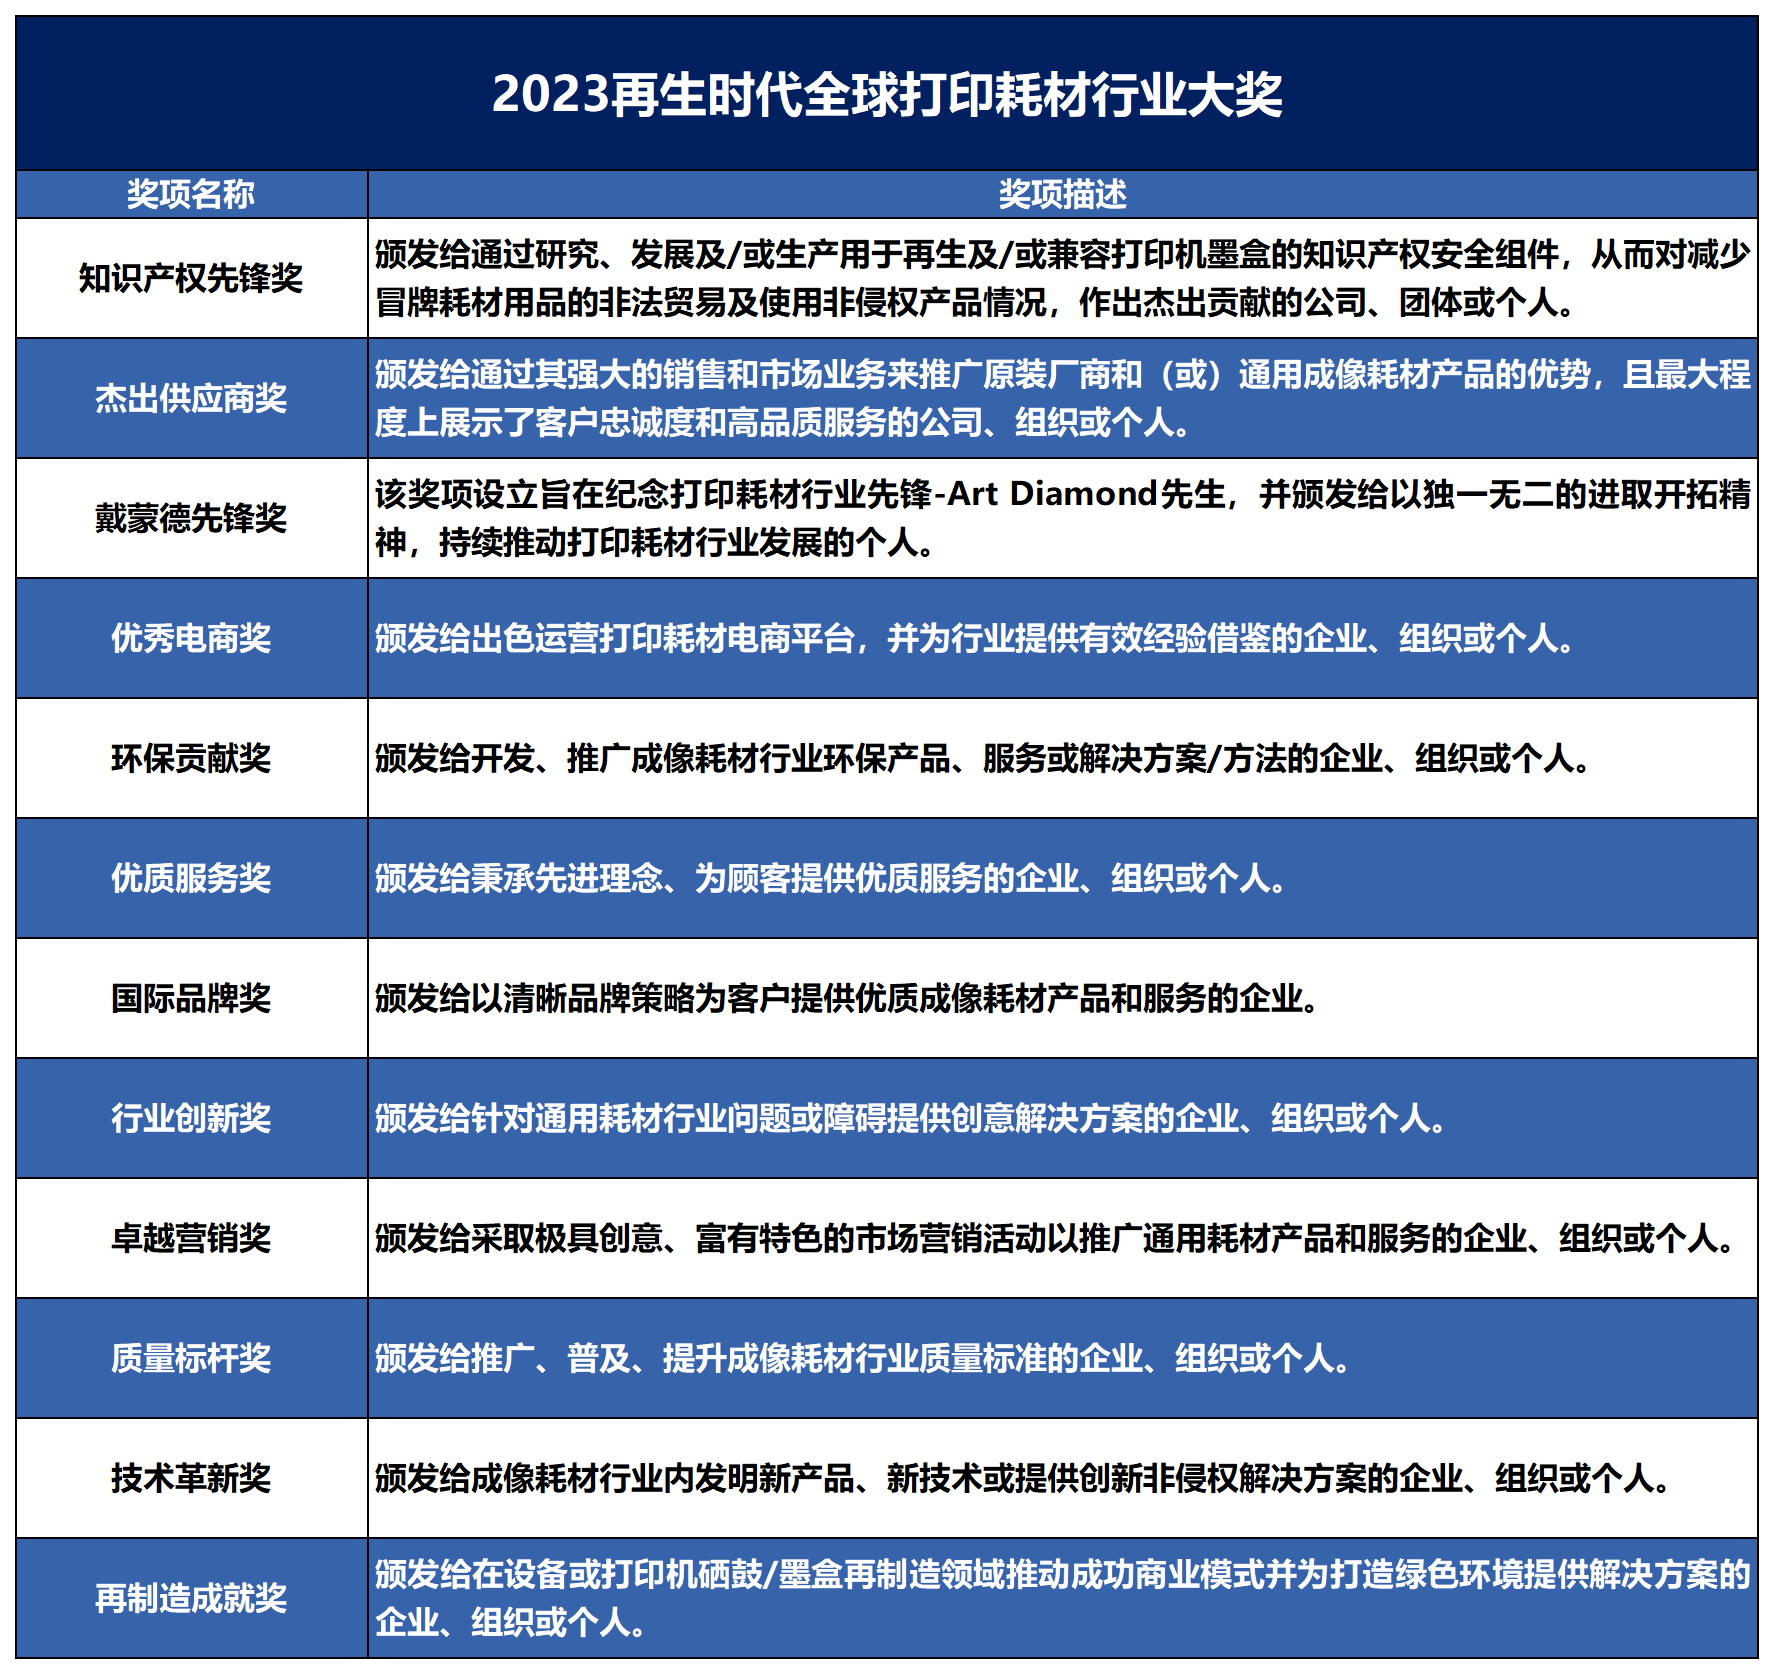 2023行业大奖奖项设置(1)(3)_蓝色.png